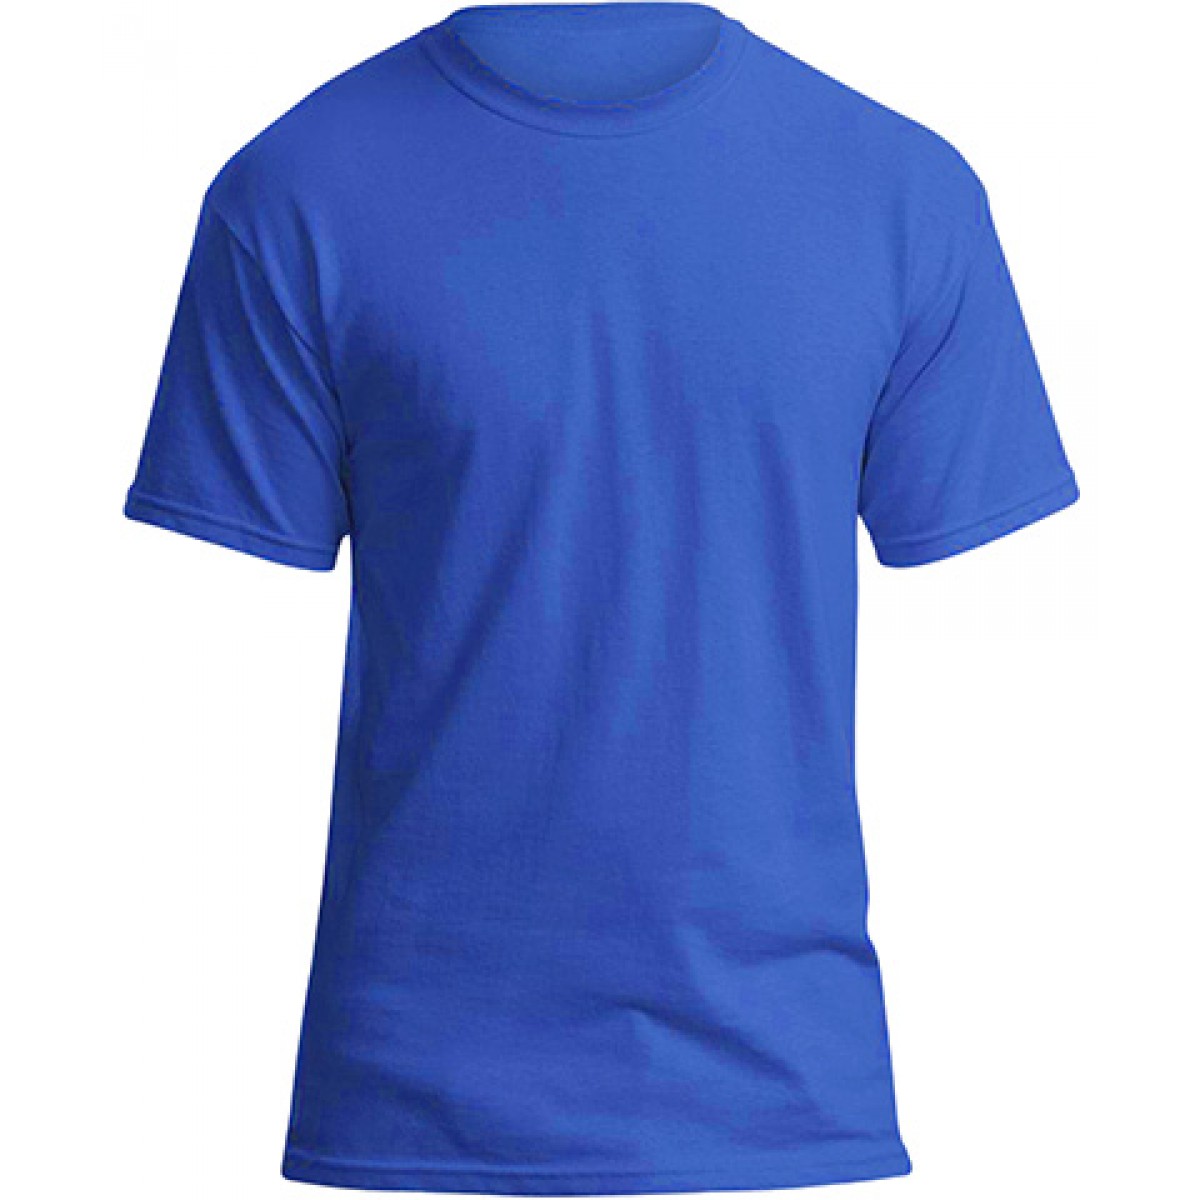 Soft 100% Cotton T-Shirt-Royal Blue-L